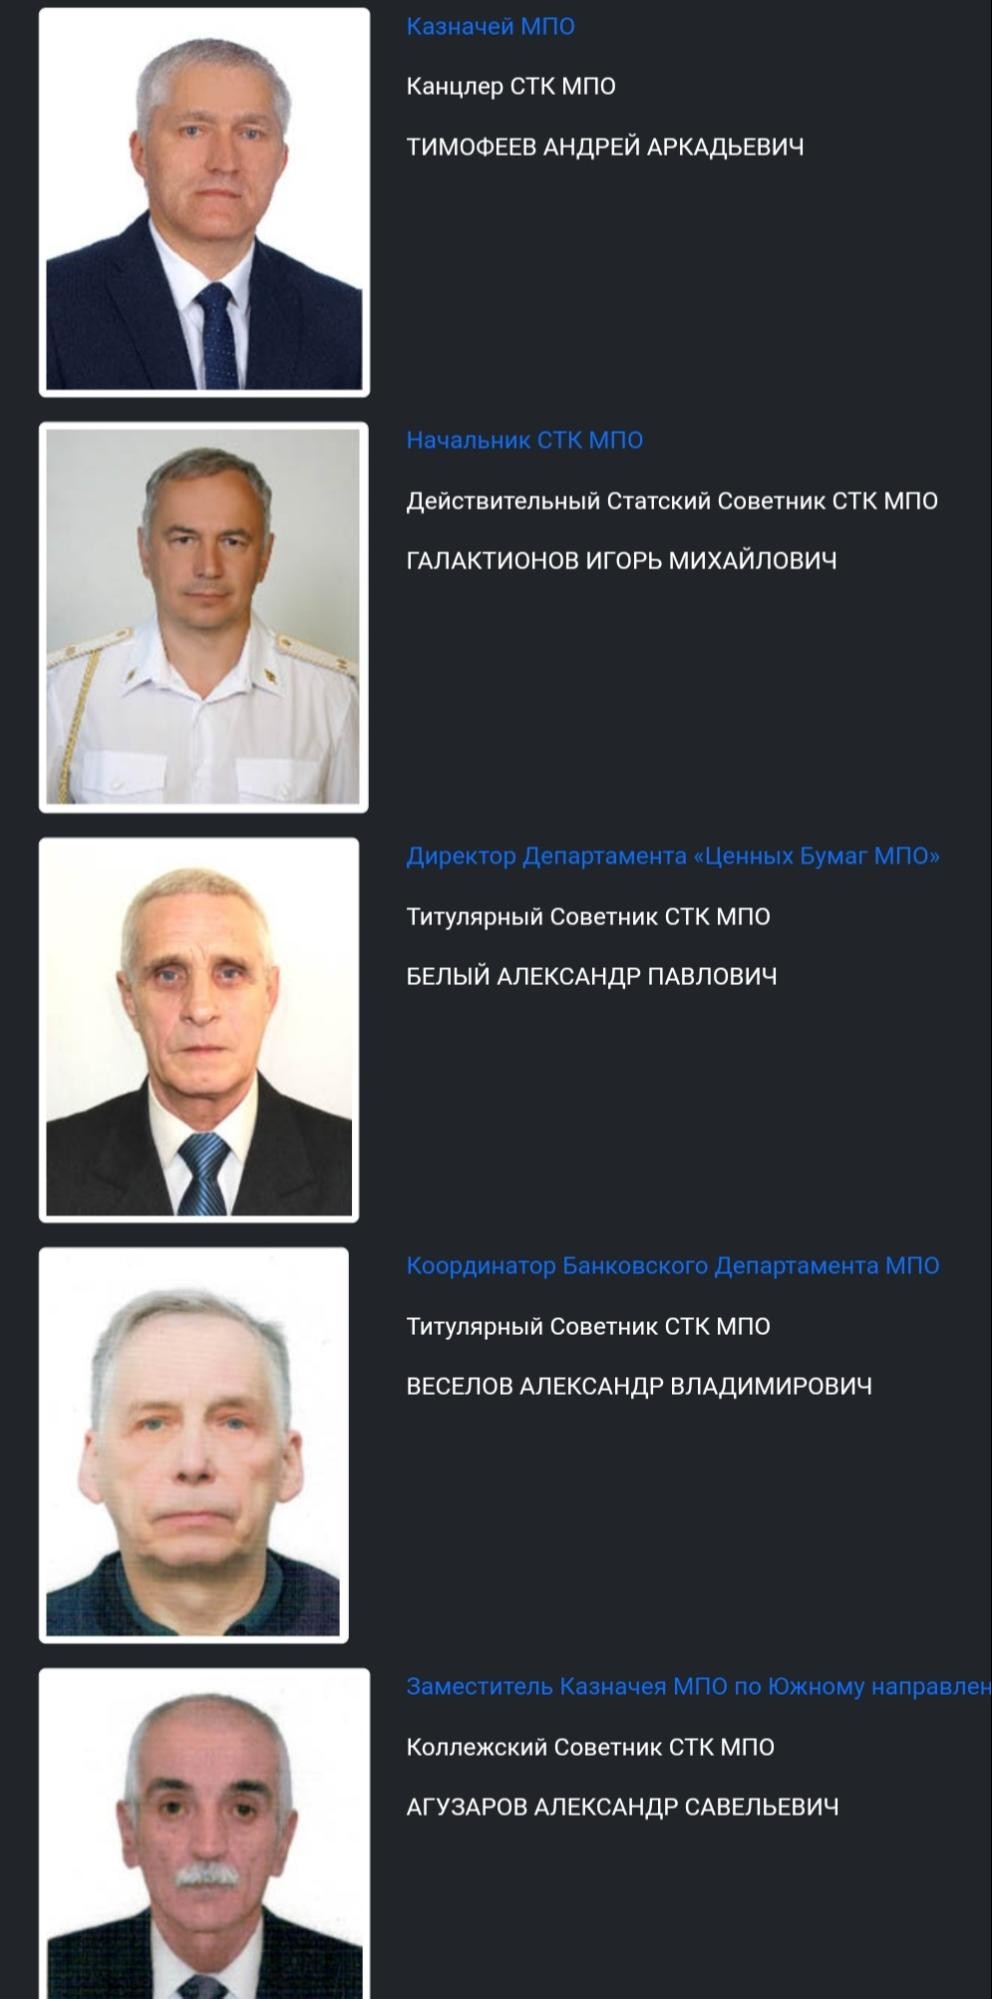 МПО Вогульский Пайщик организация руководители